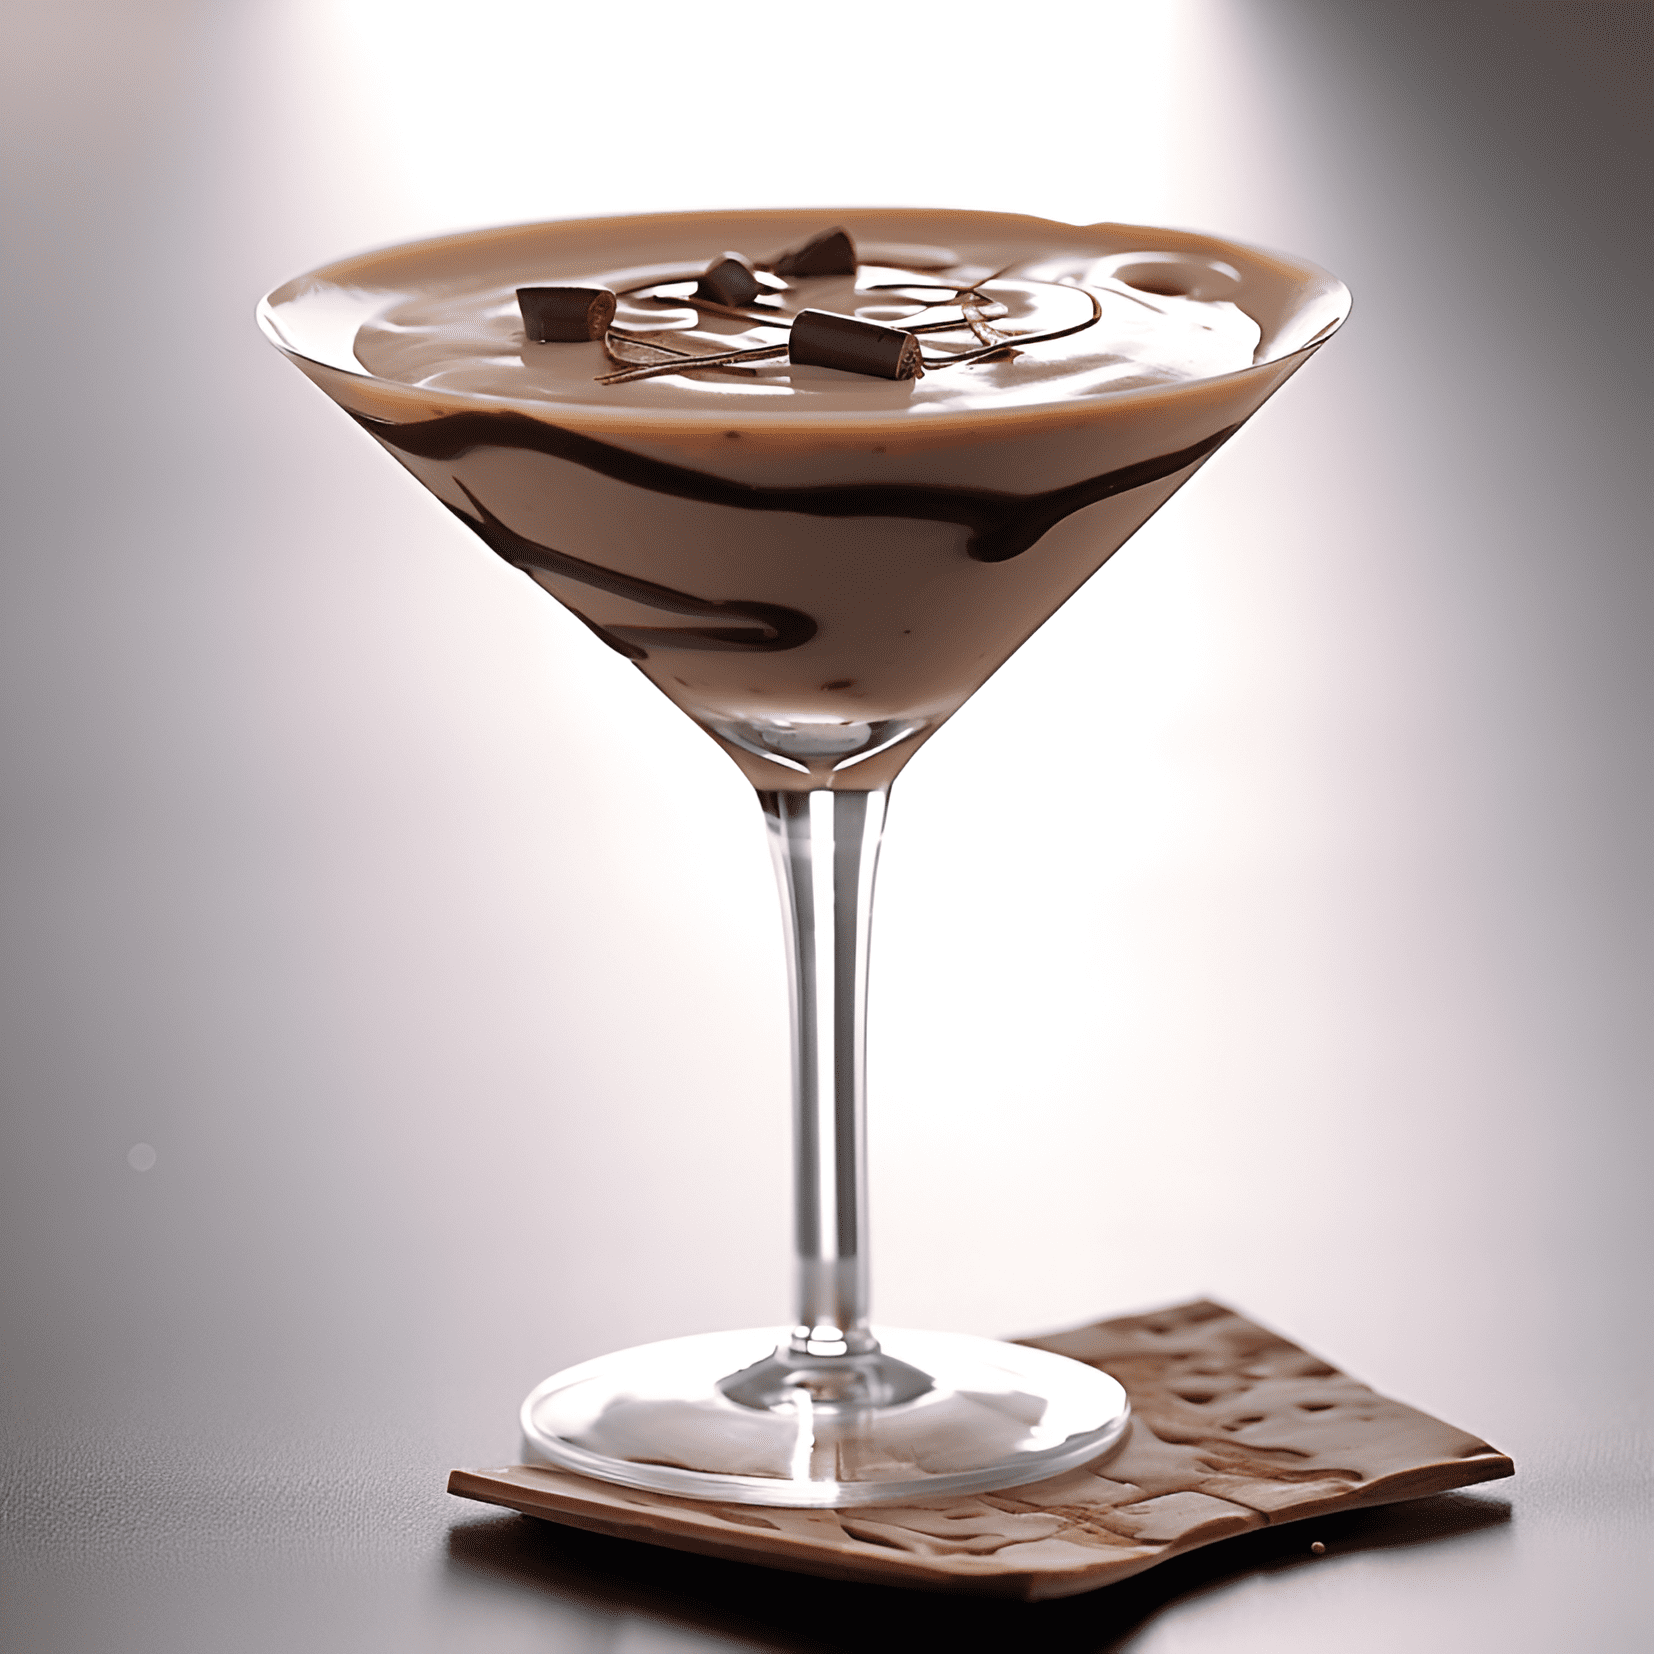 Chocolate Martini Cóctel Receta - El Chocolate Martini es rico, cremoso y dulce, con un sabor a chocolate aterciopelado y un toque de vainilla. Tiene una sensación suave y lujosa en la boca y un toque ligeramente embriagador del vodka.